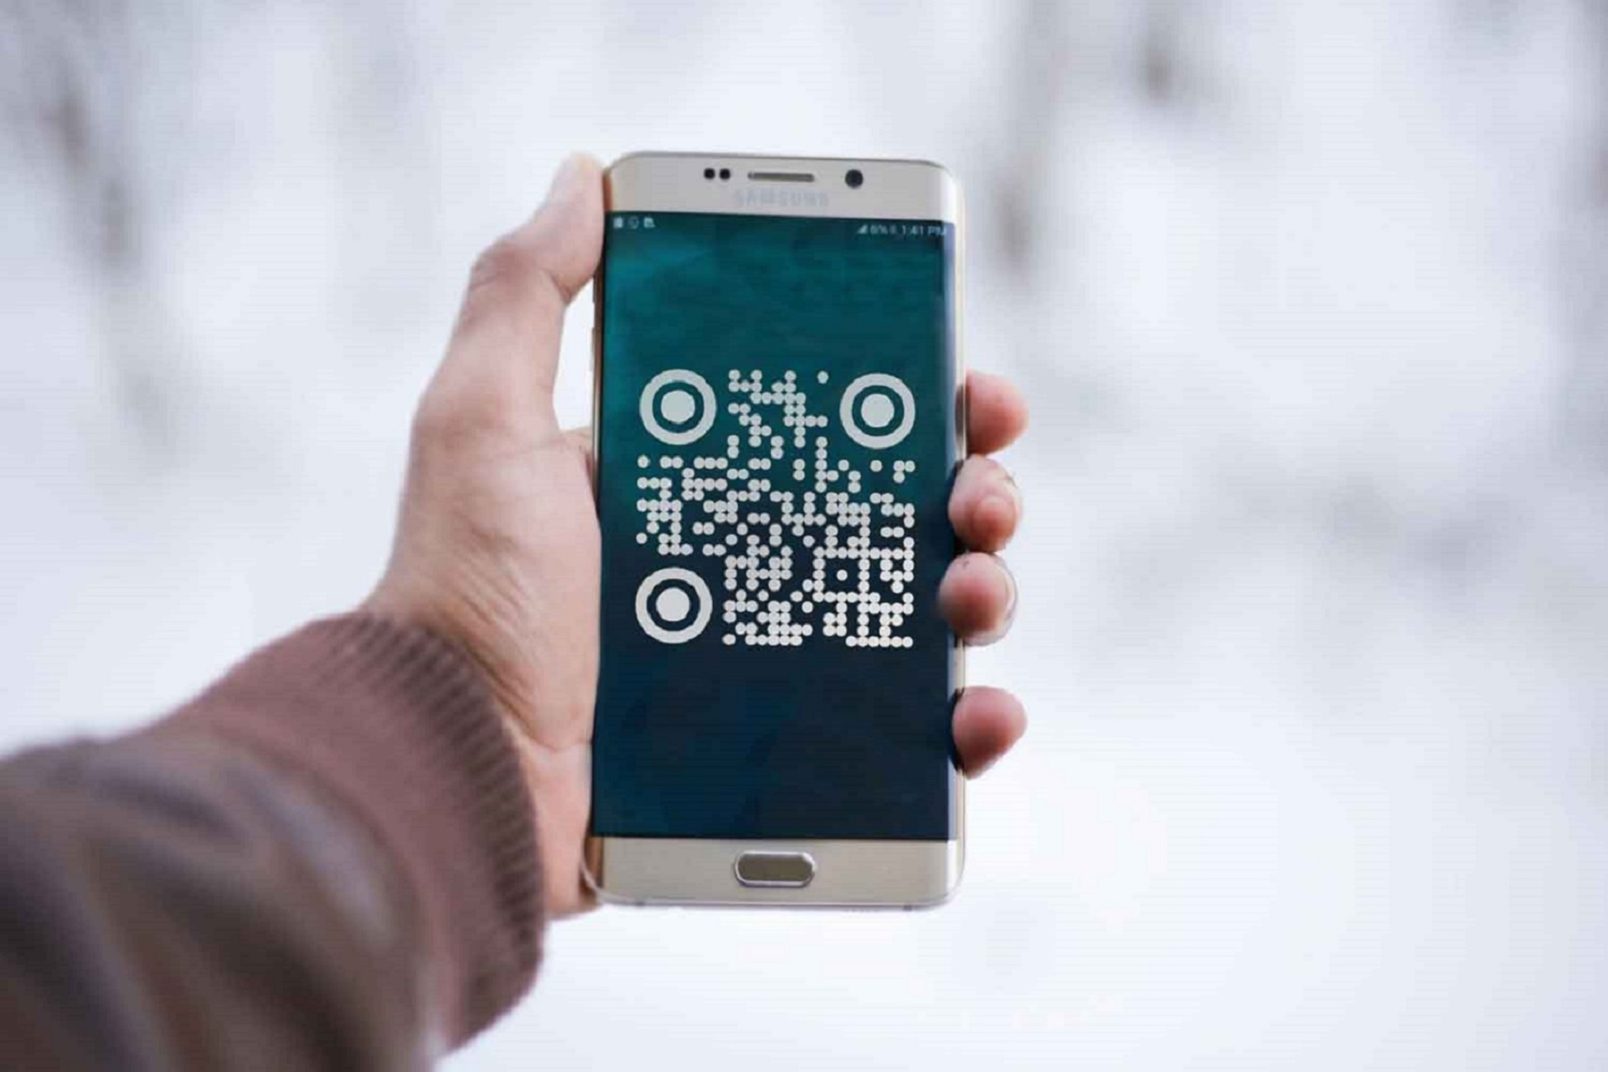 Qr Code/Barcode Scanner & Reader Voor Samsung - Pageloot